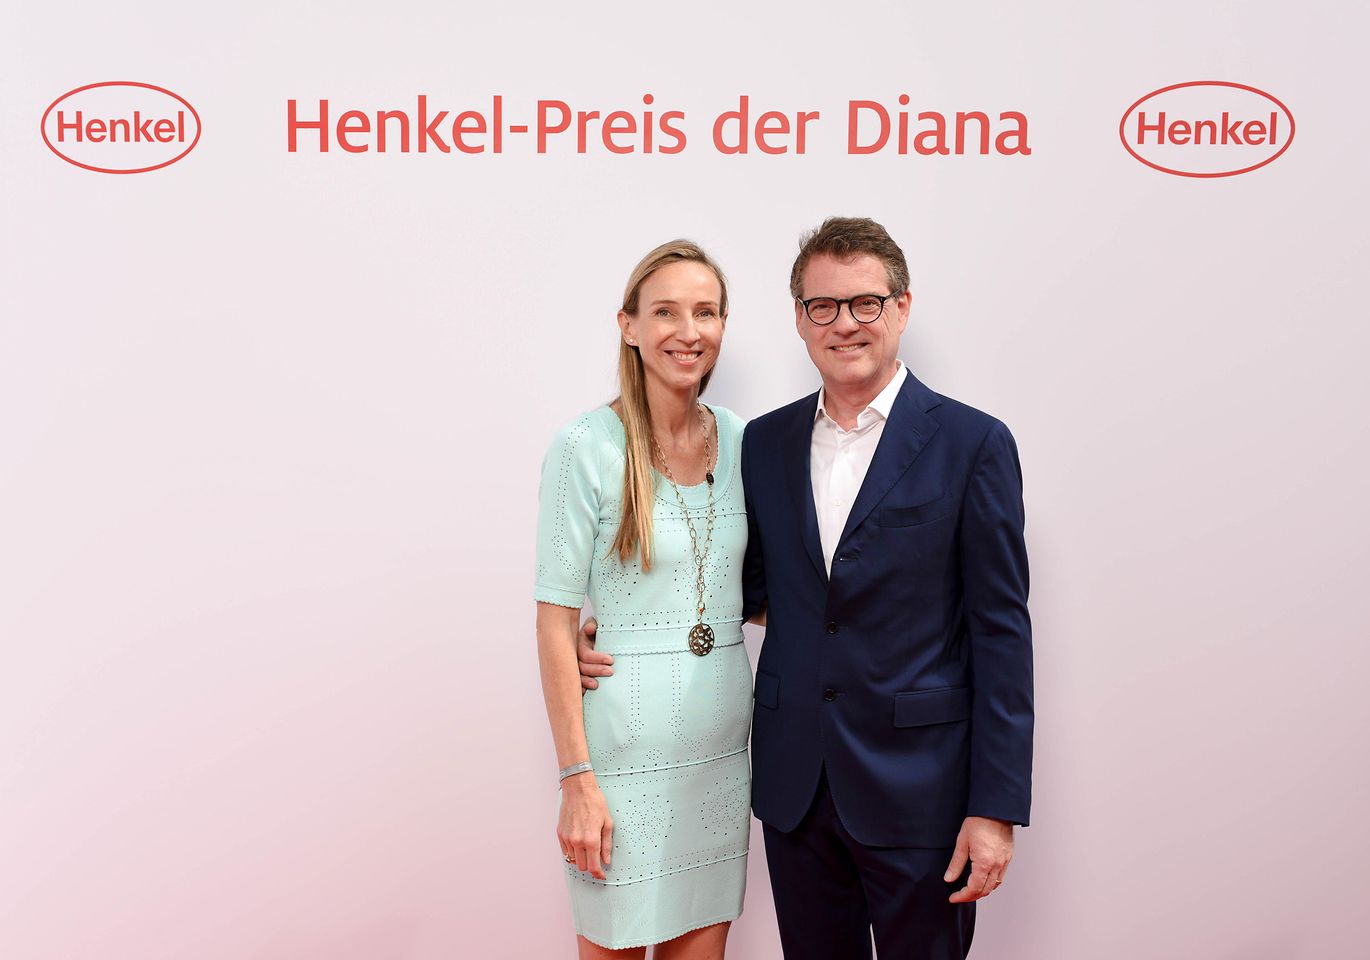 Dr. Simone Bagel-Trah, Vorsitzende des Aufsichtsrats und des Gesellschafterausschusses von Henkel, mit Ehemann Dr. Christoph Trah